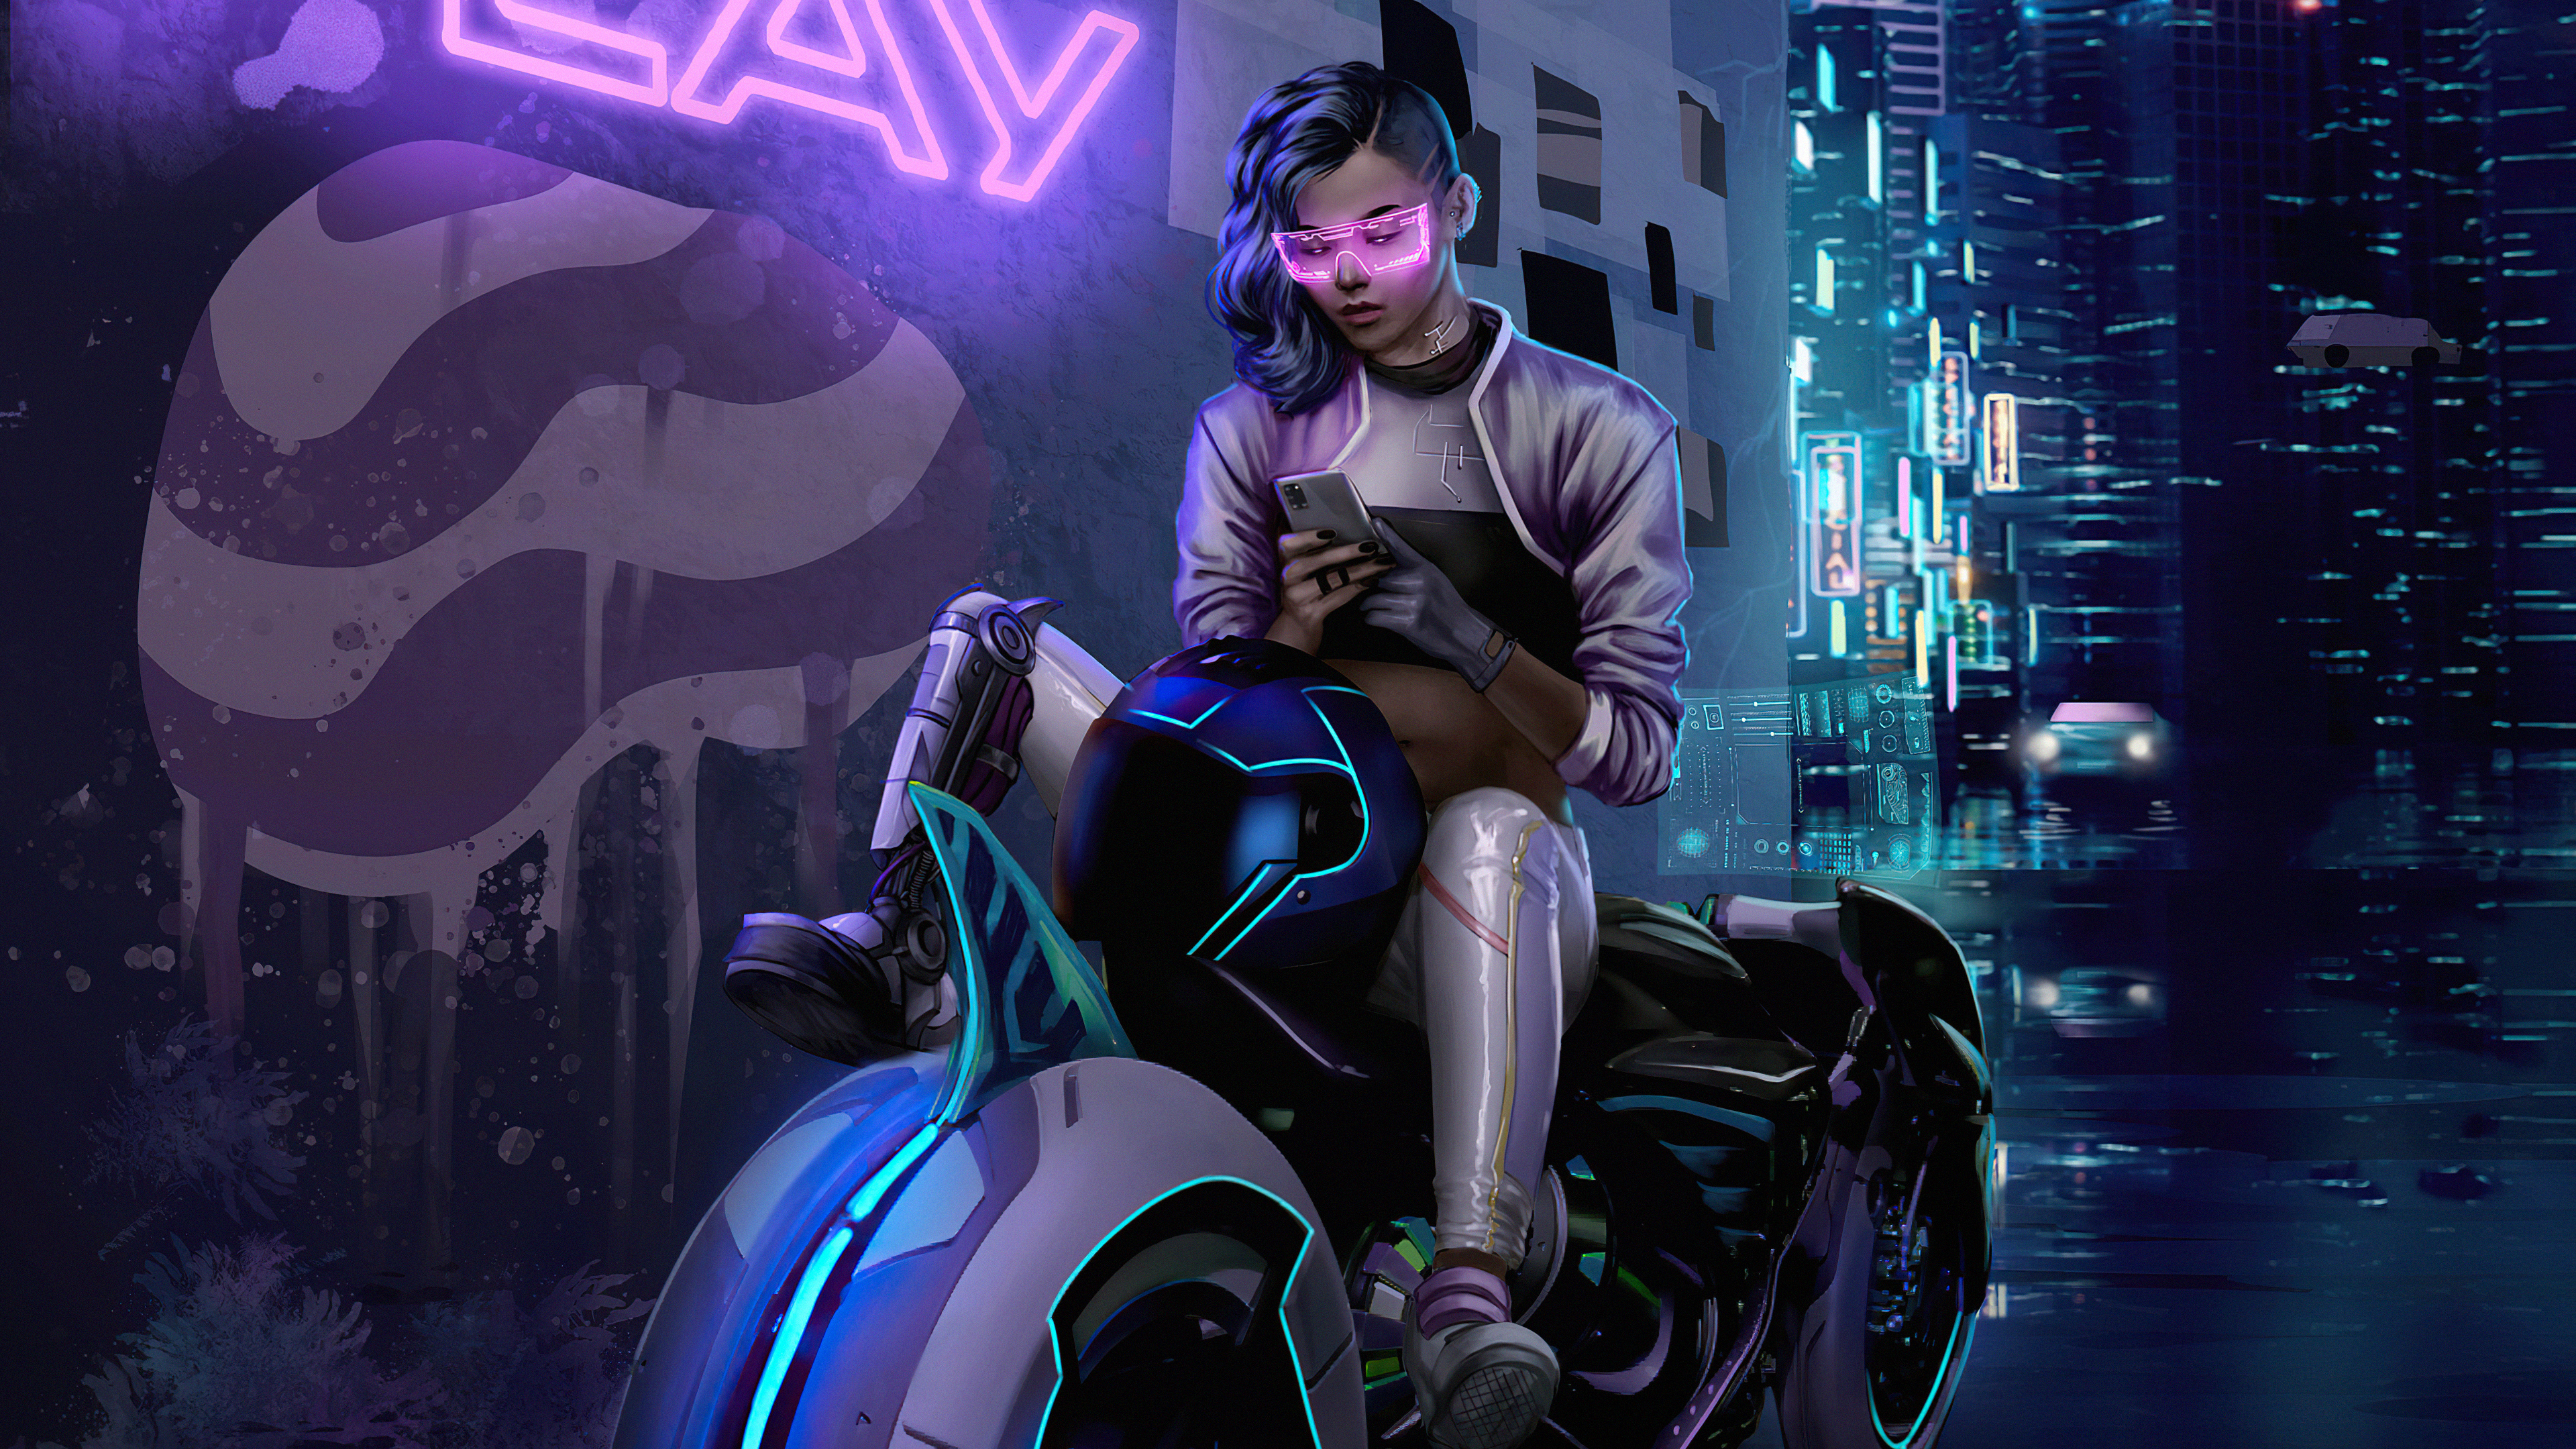 Cyberpunk Bike Girl Texting Phone 4k, HD Artist, 4k Wallpapers